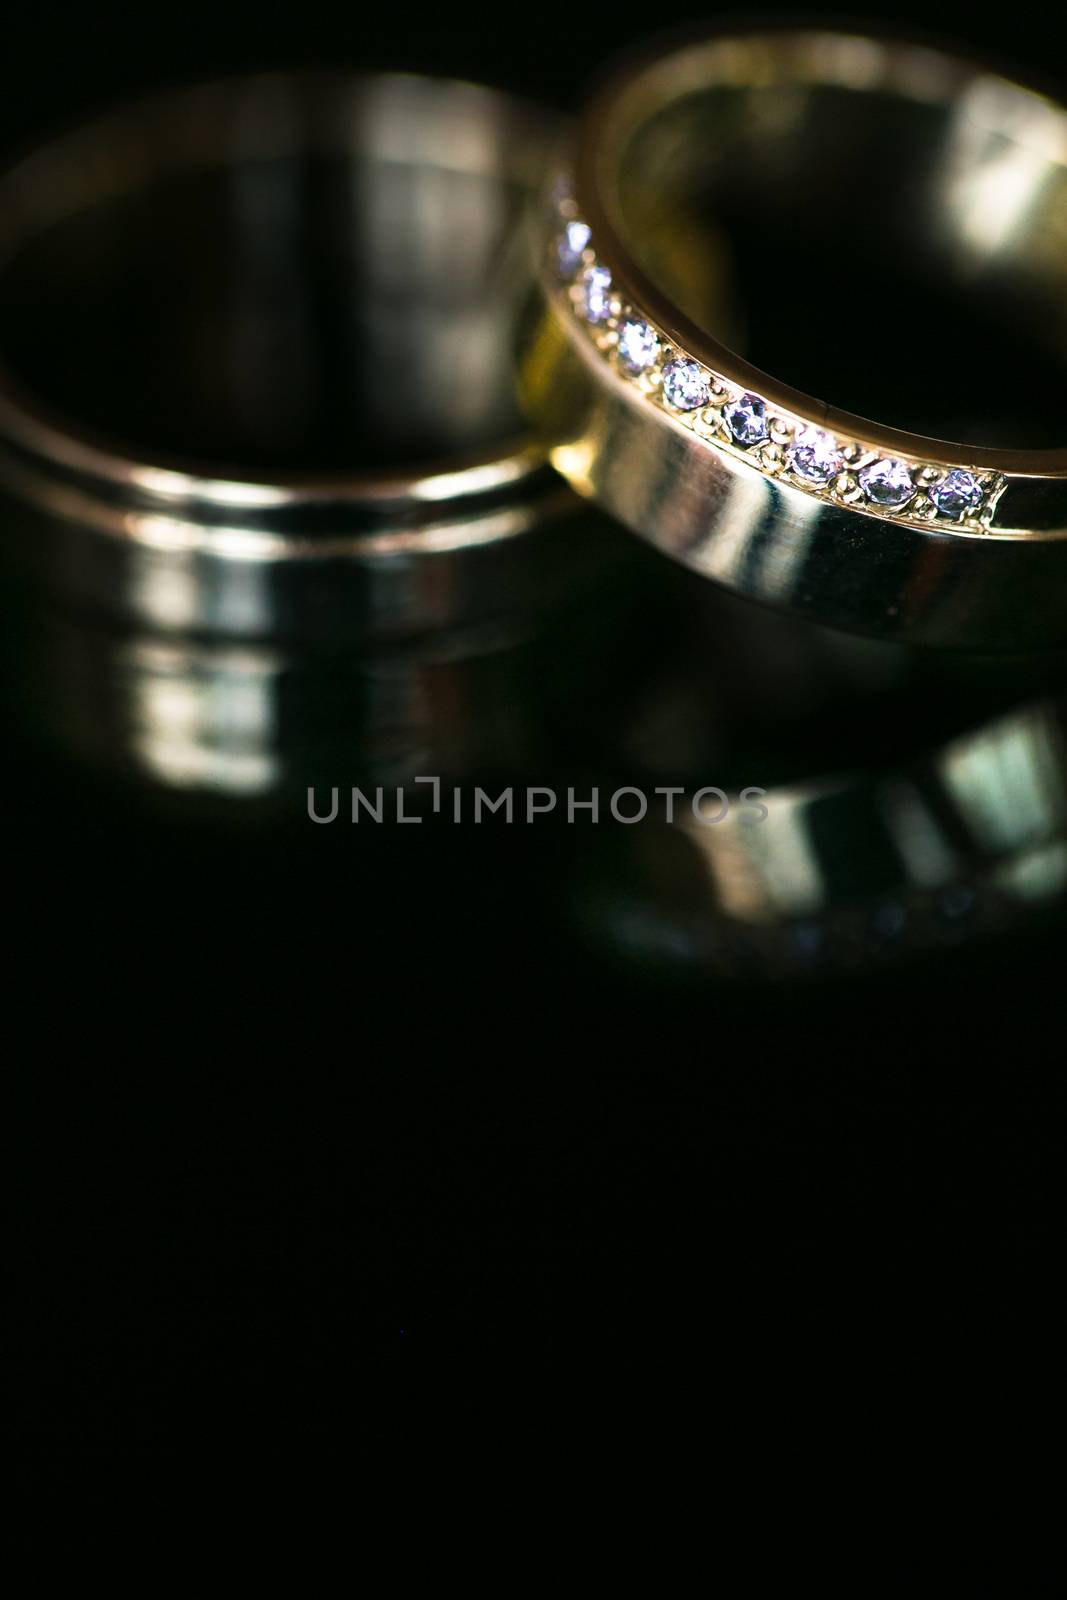 Wedding day details - two lovely golden wedding rings by viktor_cap